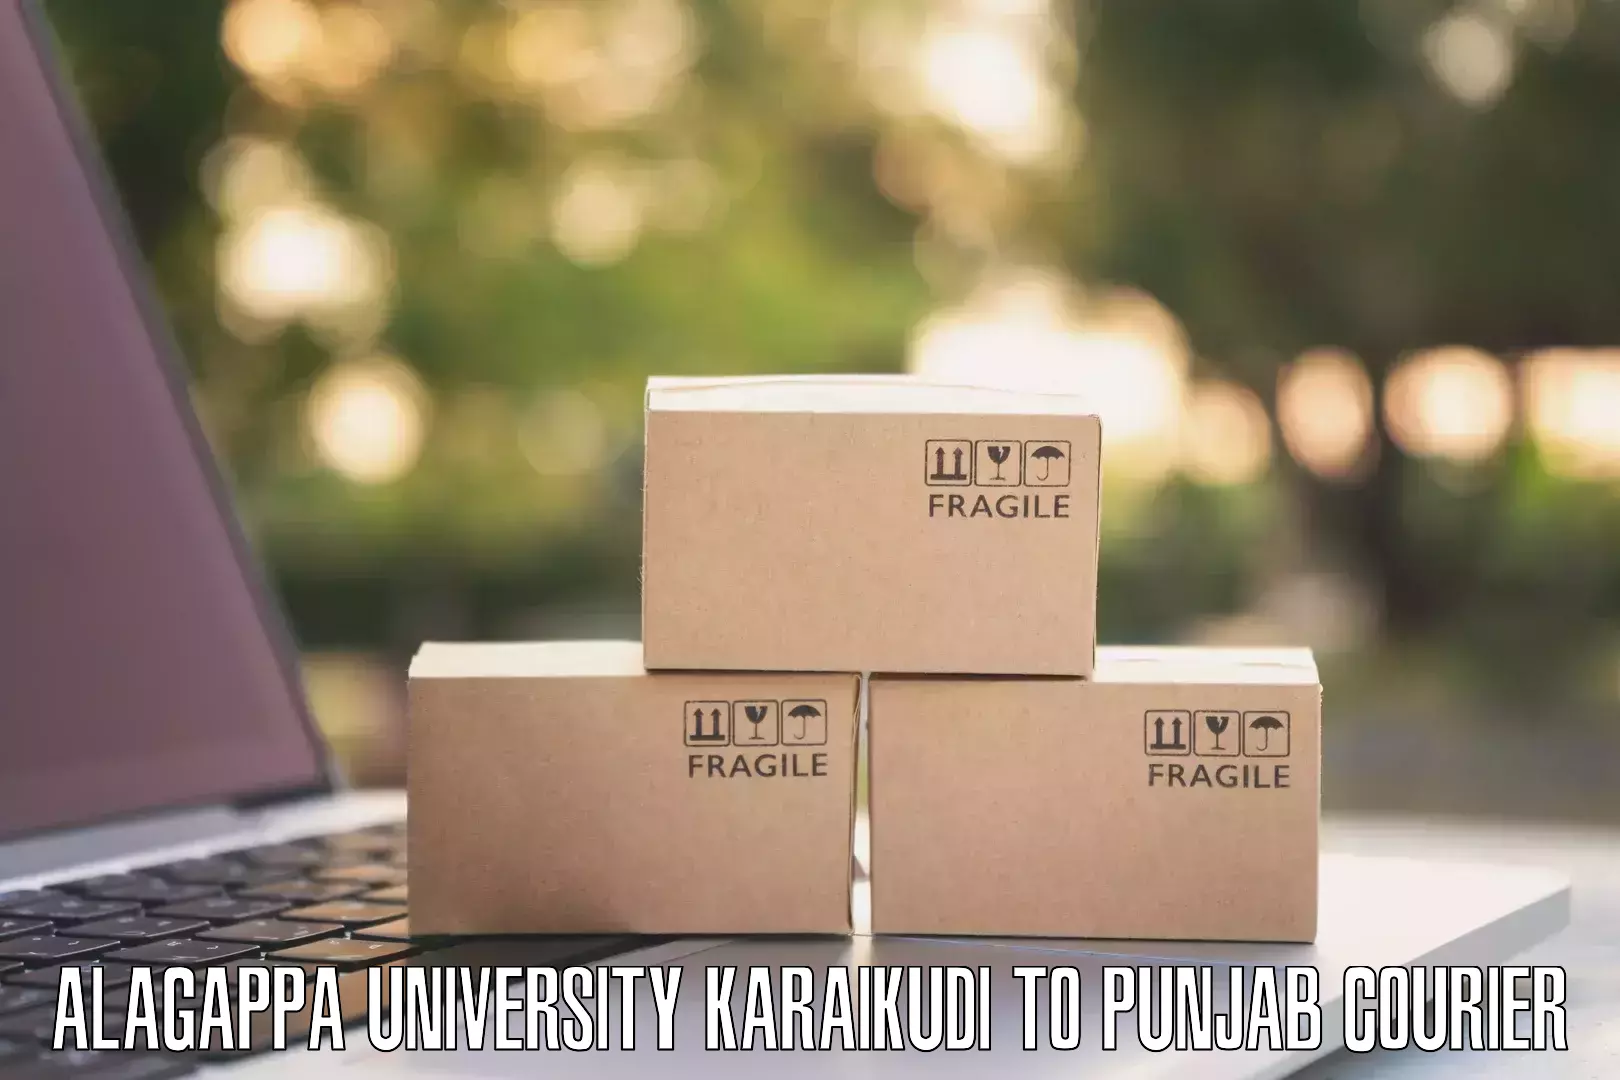 Digital courier platforms Alagappa University Karaikudi to Dharamkot